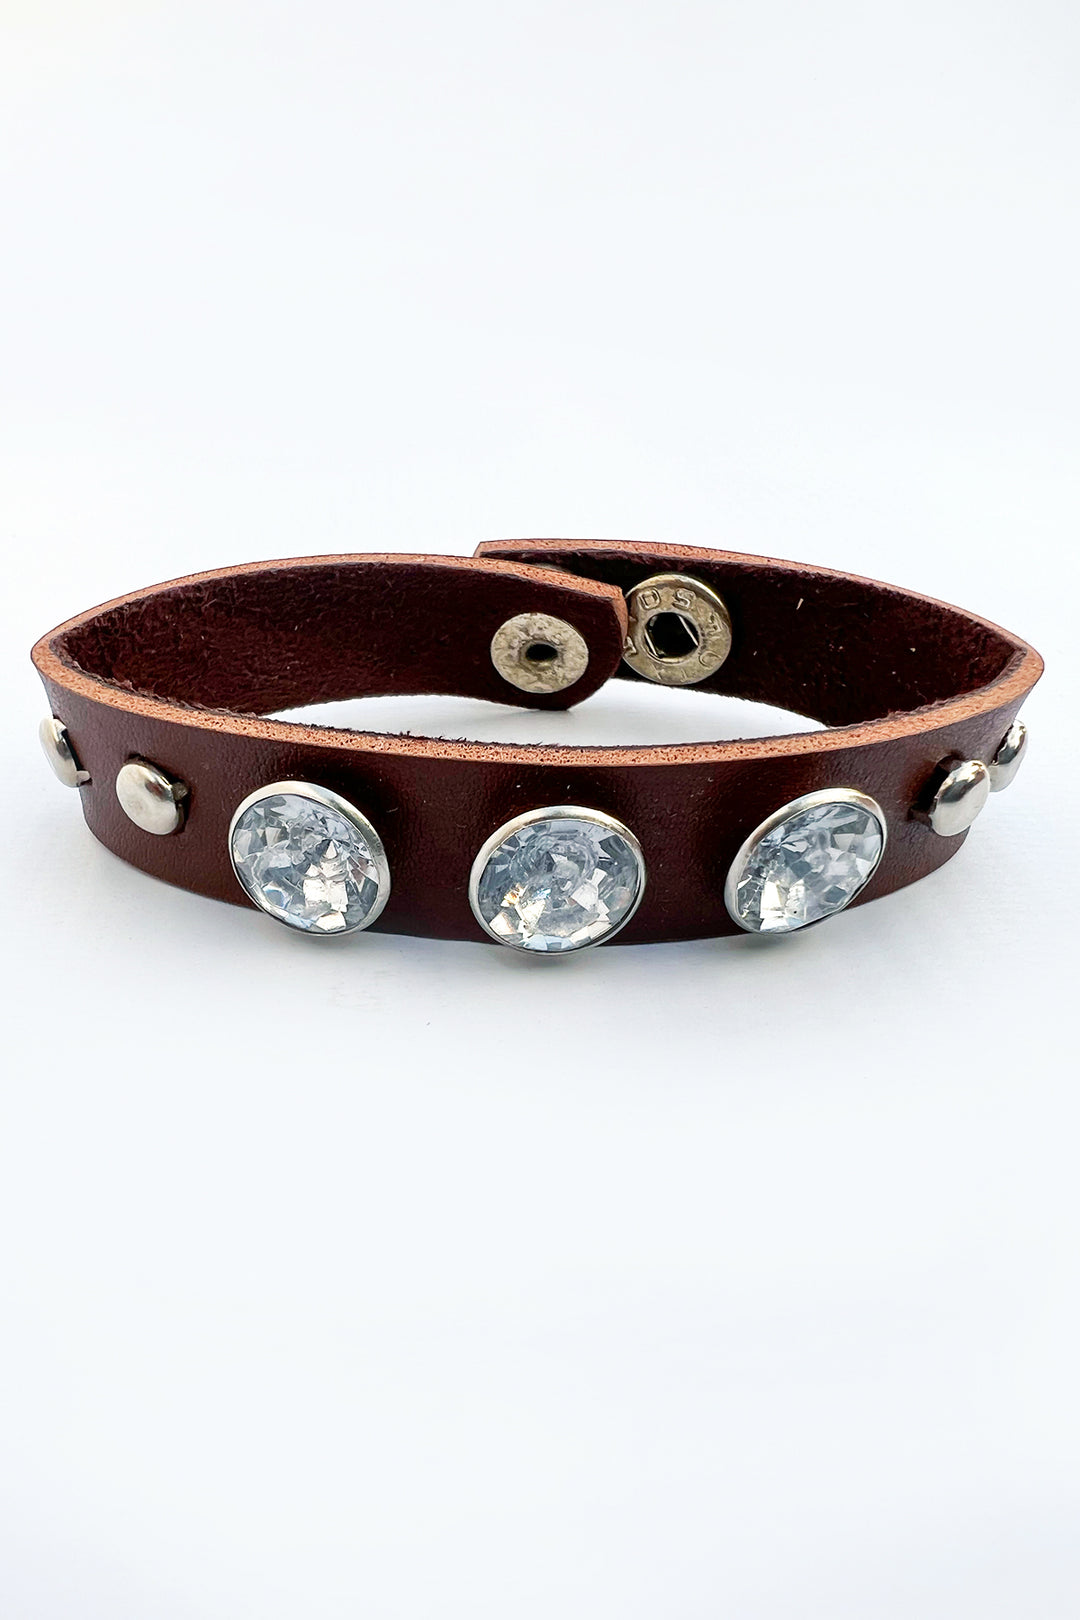 Crystal leather bracelet - S23 - MJW0052